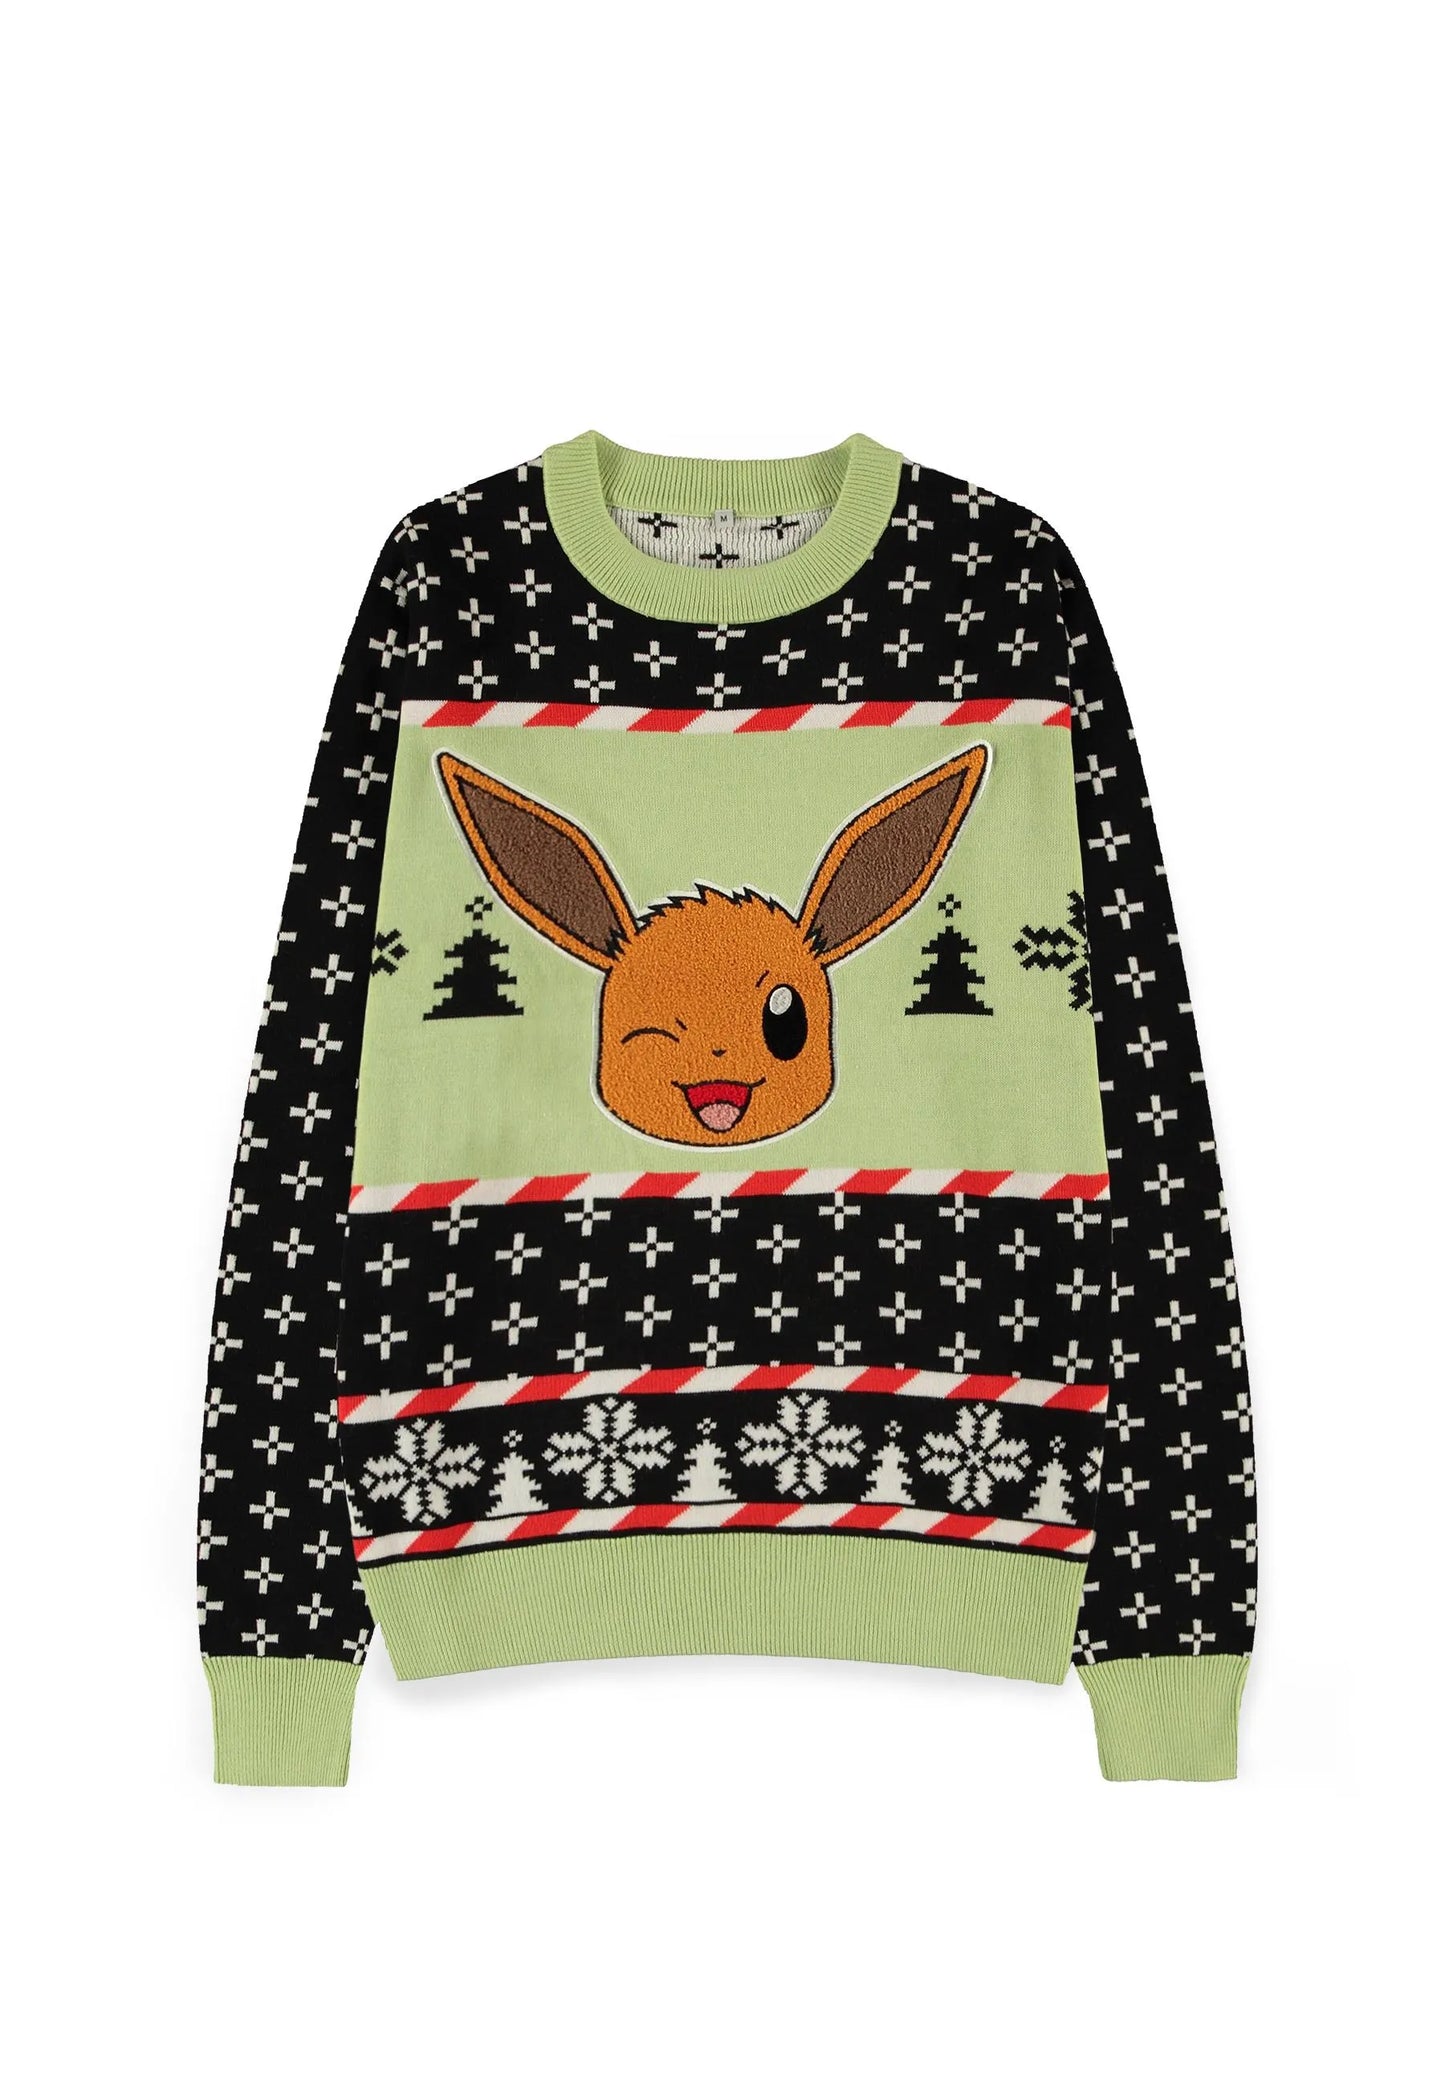 Pokemon Christmas Sweater - Eevee